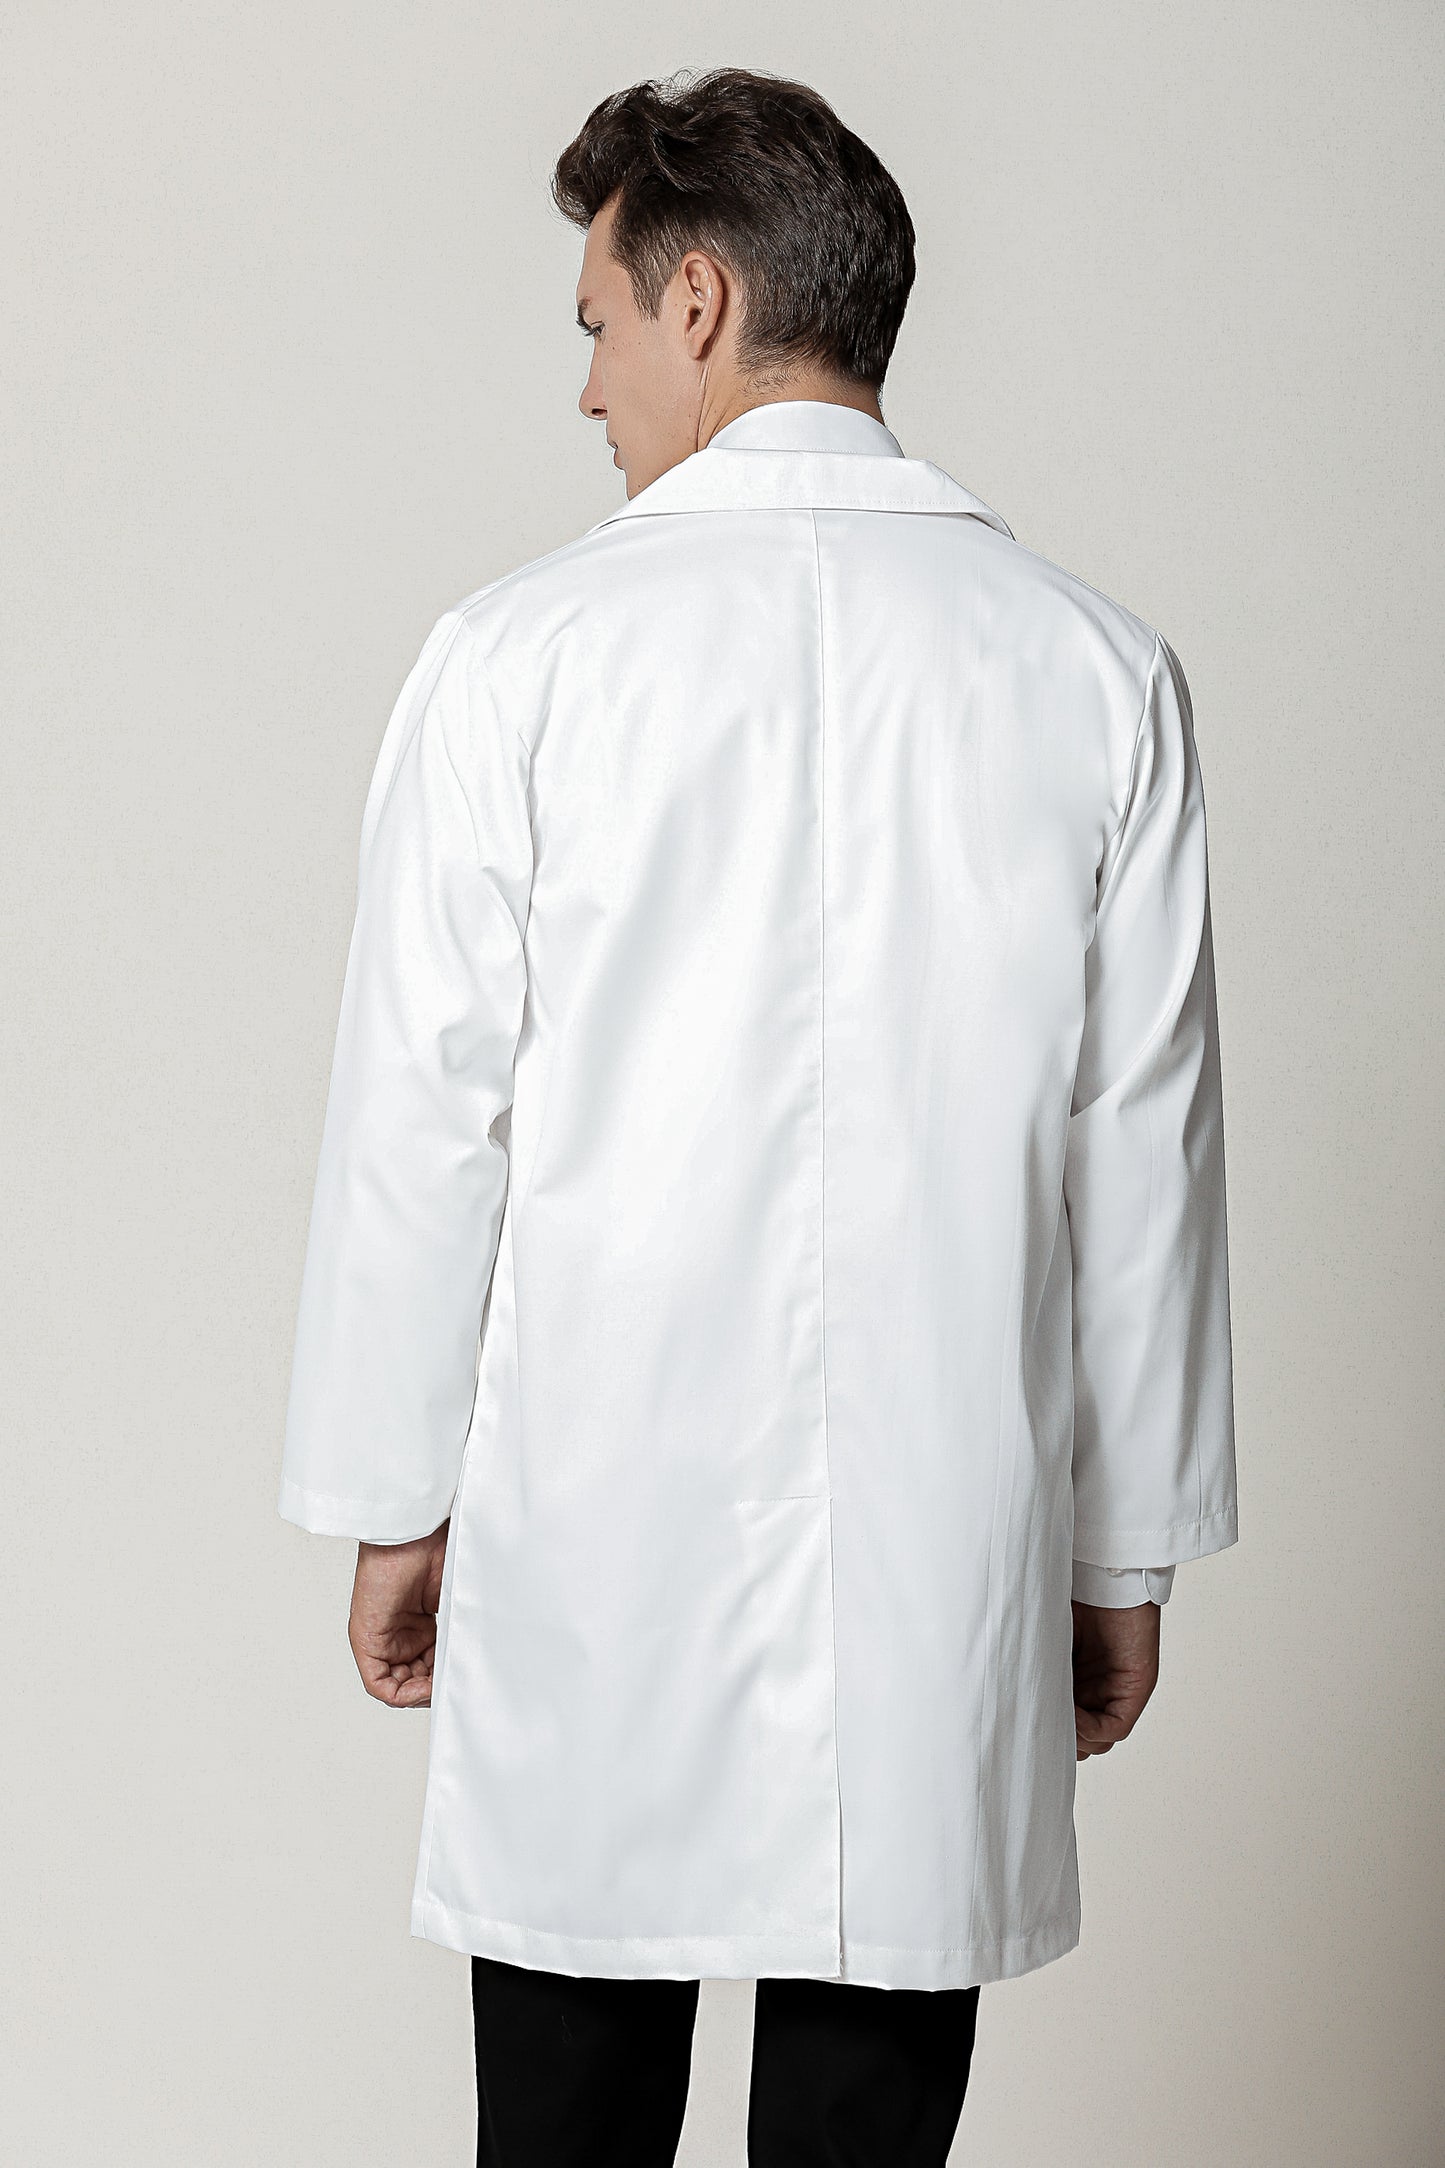 Laboratory Coat White, Long Sleeve